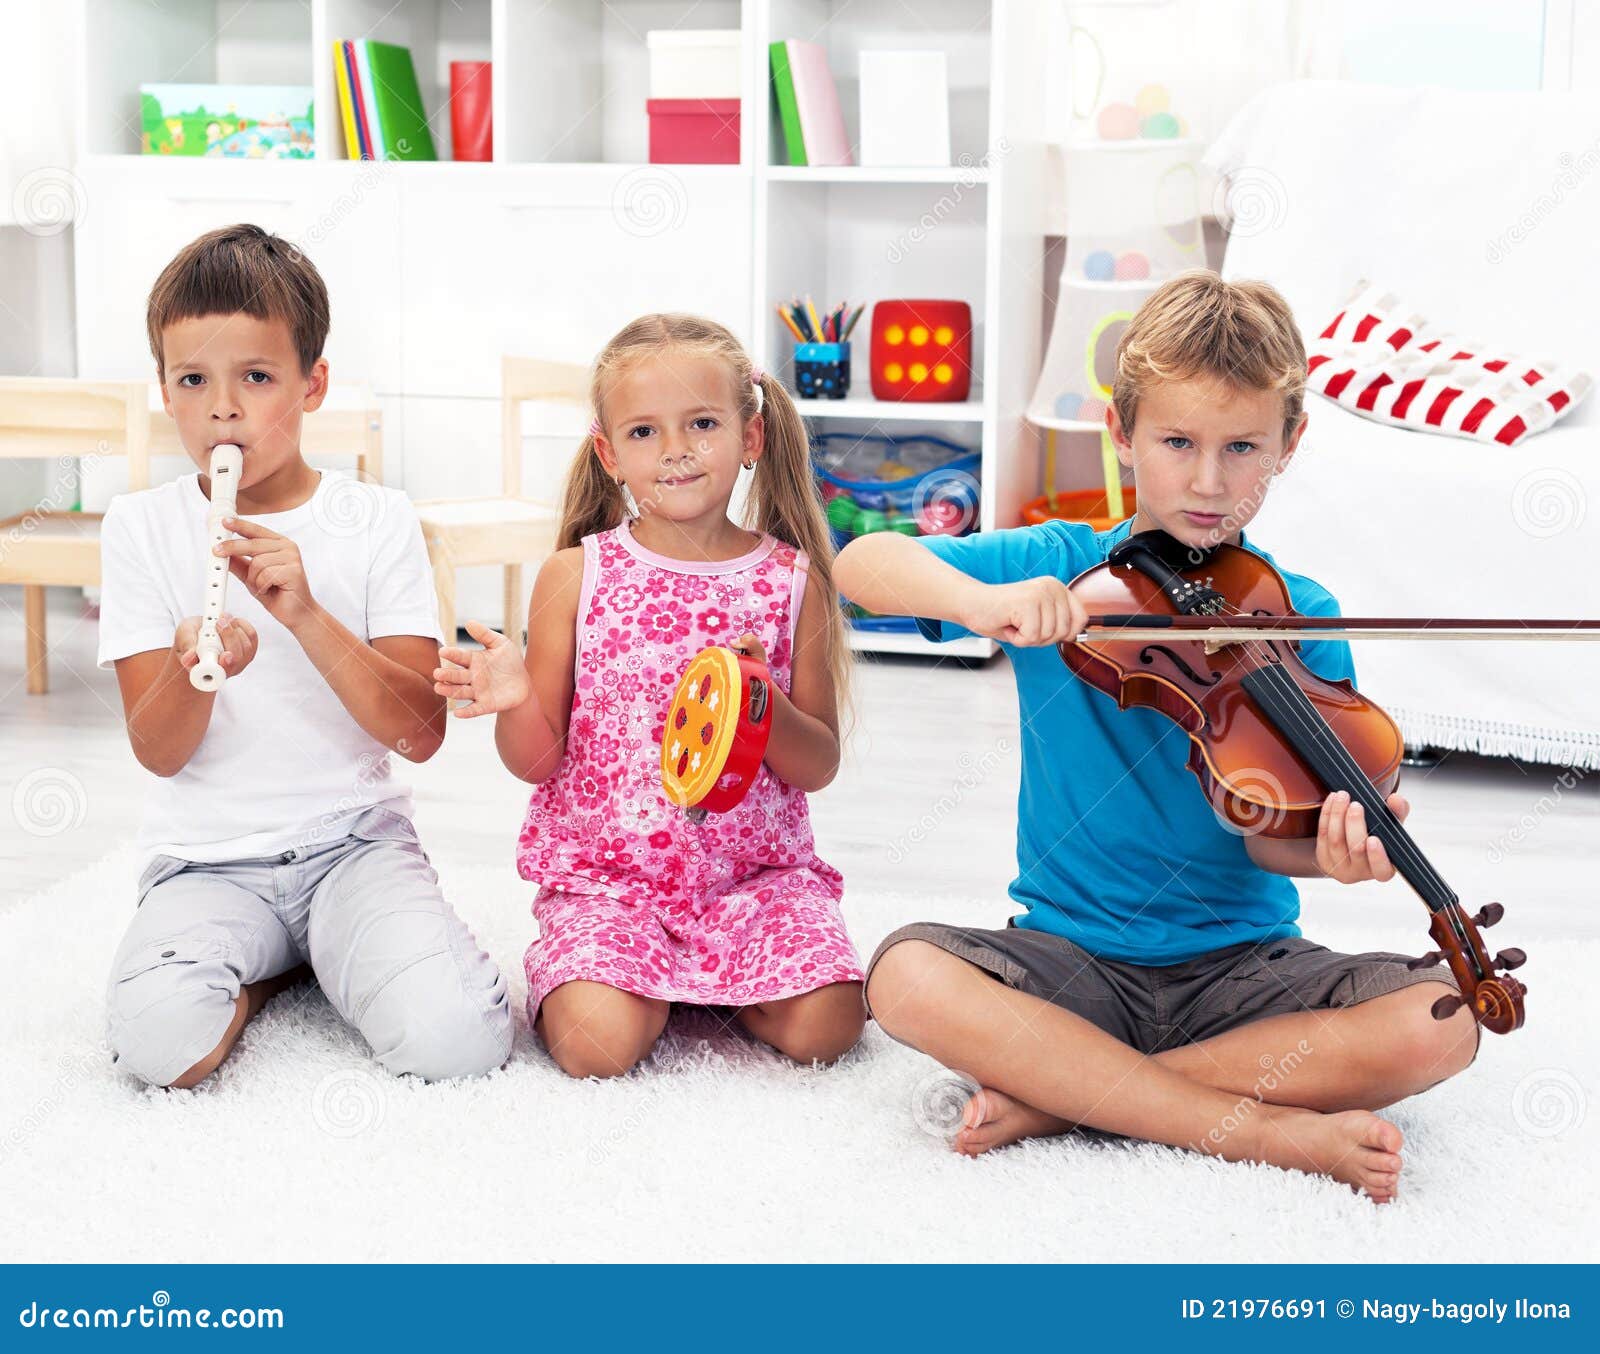 Играйте пойте о друзья. Музыкальные инструменты для детей. Музыкальные инструменты для дошкольников. Дети играющие на музыкальных инструментах. Музыкальное творчество детидети.